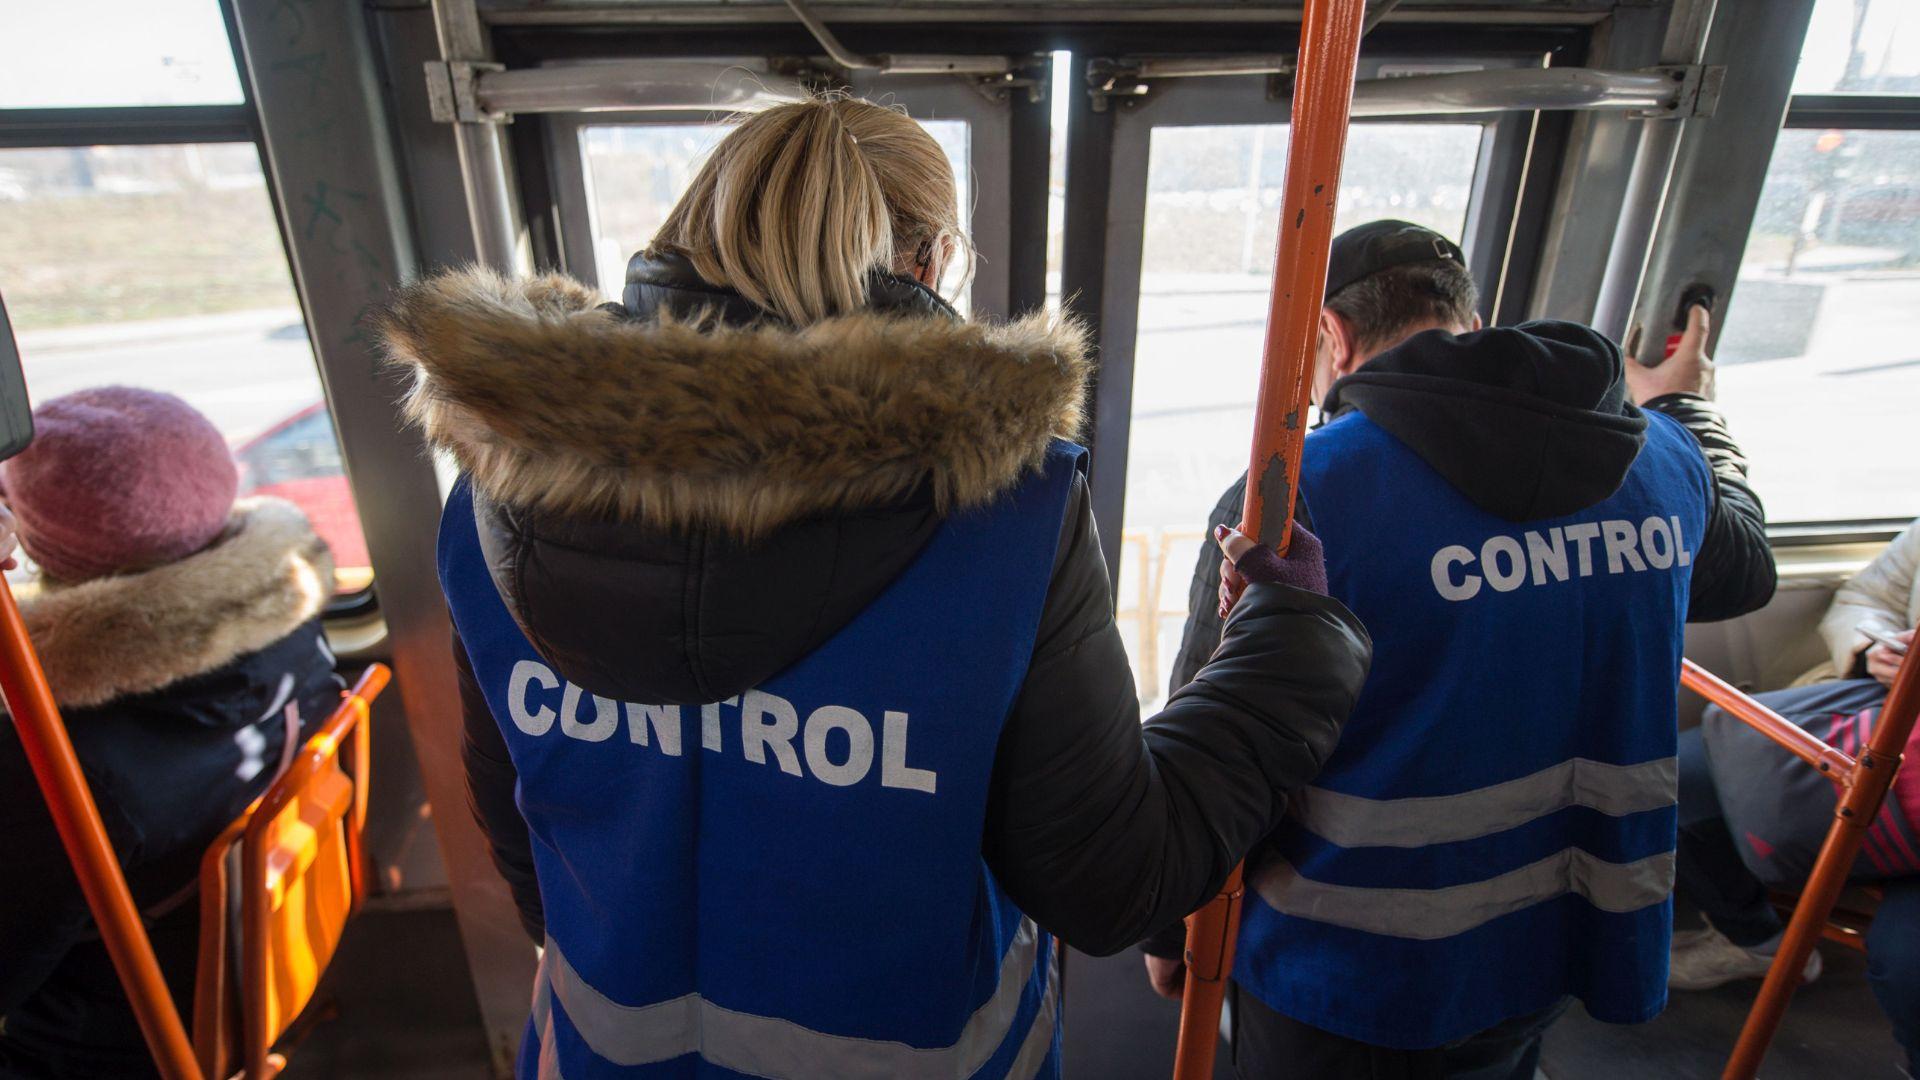 O femeie din București a primit amendă în autobuz, cu toate că plătise biletul STB prin SMS. Cum a fost posibil așa ceva